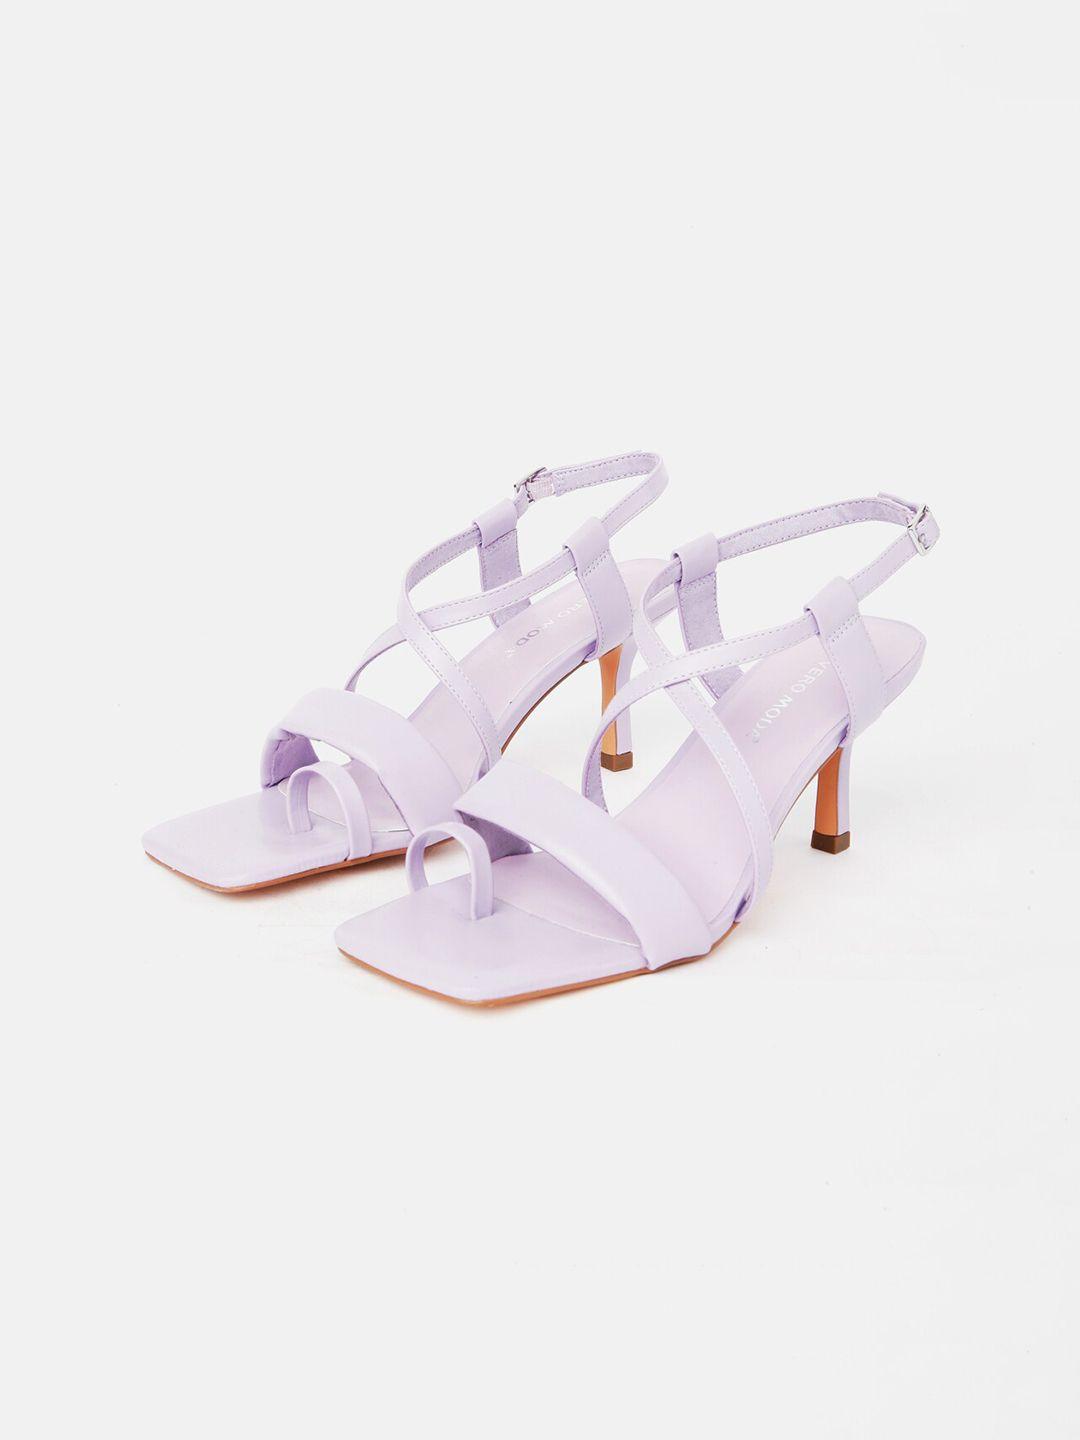 vero moda purple heels with buckles